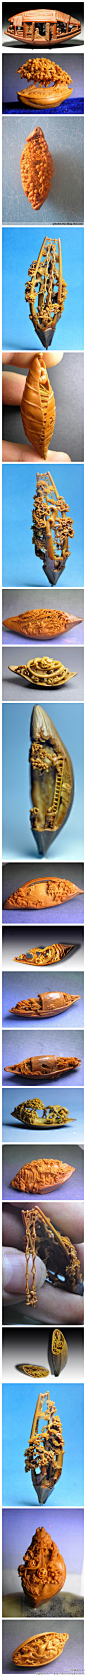 [【艺术创意】绝美的核桃雕刻艺术] - 第一次见到核雕，有点不可思议！